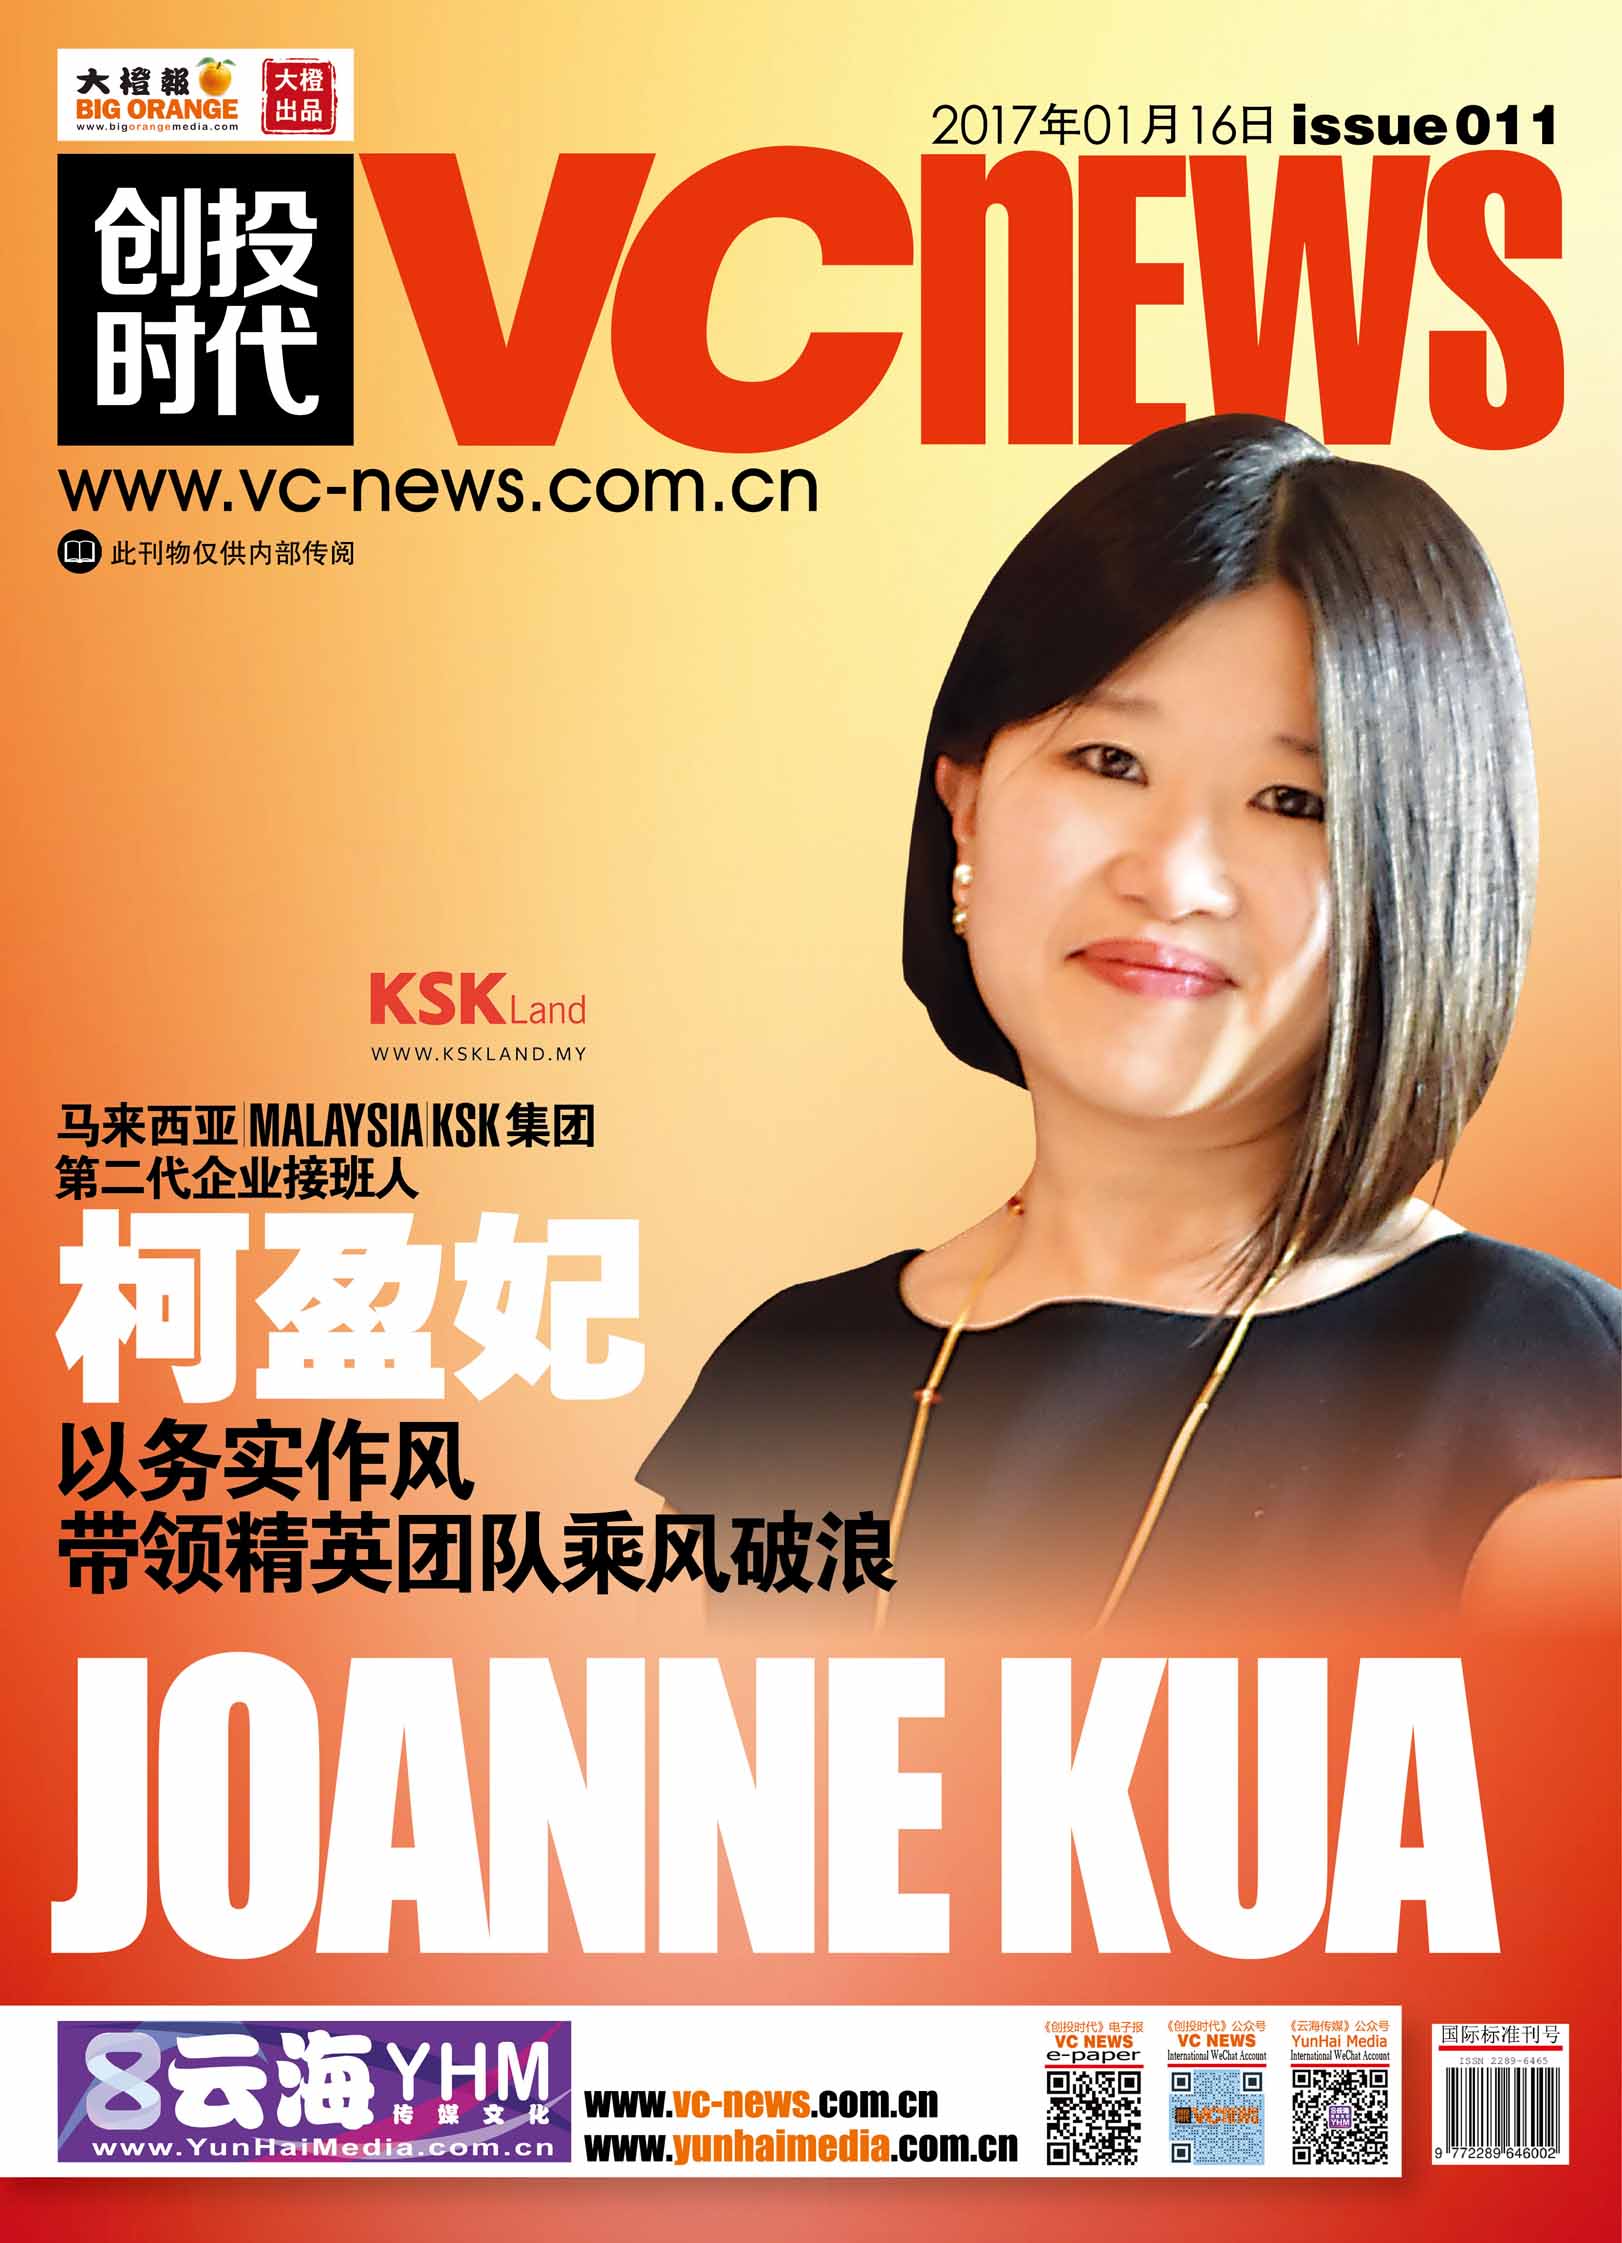 马来西亚 Malaysia KSK集团 第二代企业接班人柯盈妃 Joanne Kua 以务实作风带领精英团队乘风破浪 – VC News